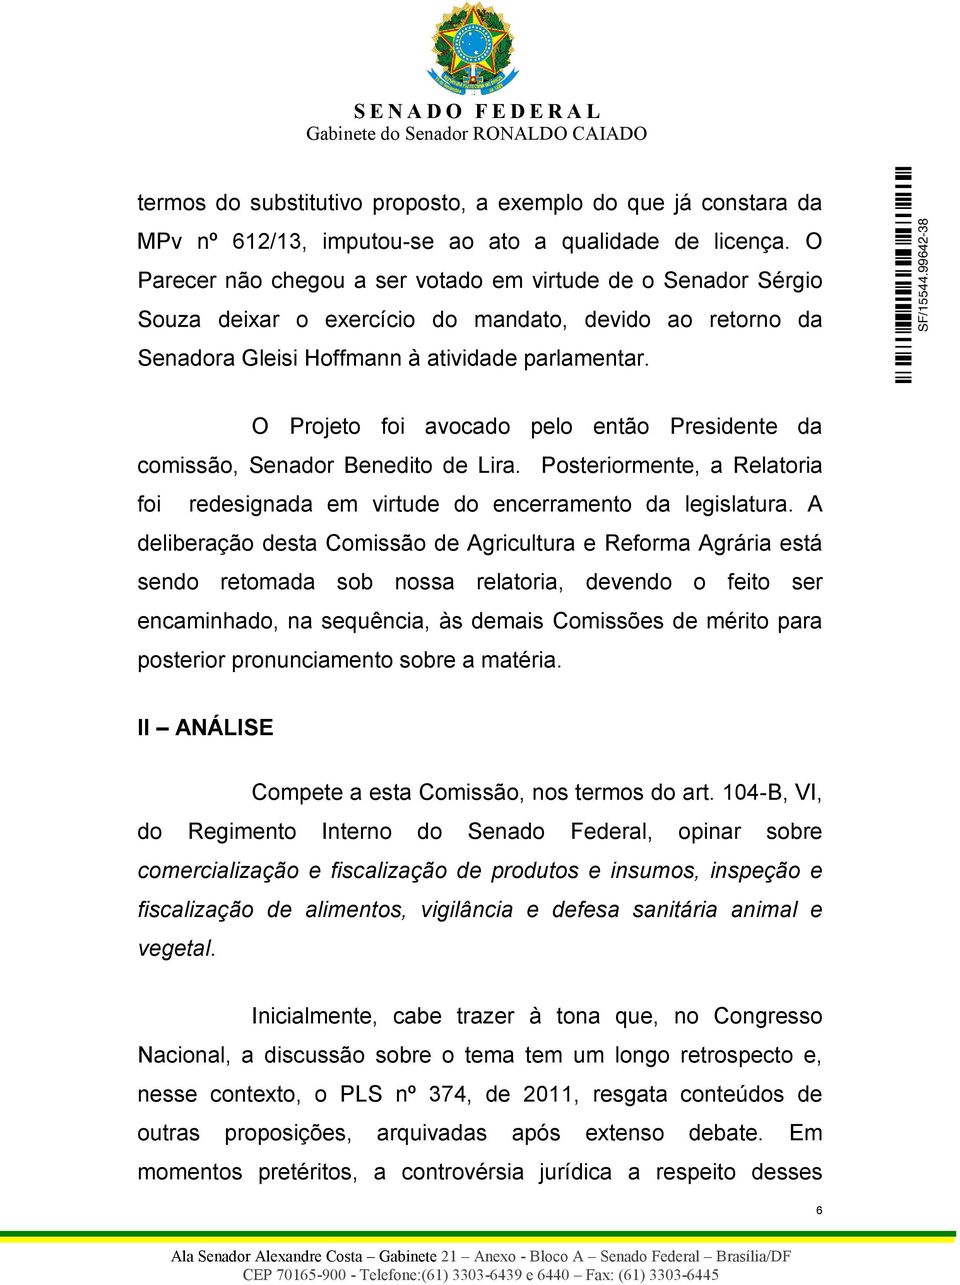 O Projeto foi avocado pelo então Presidente da comissão, Senador Benedito de Lira. Posteriormente, a Relatoria foi redesignada em virtude do encerramento da legislatura.